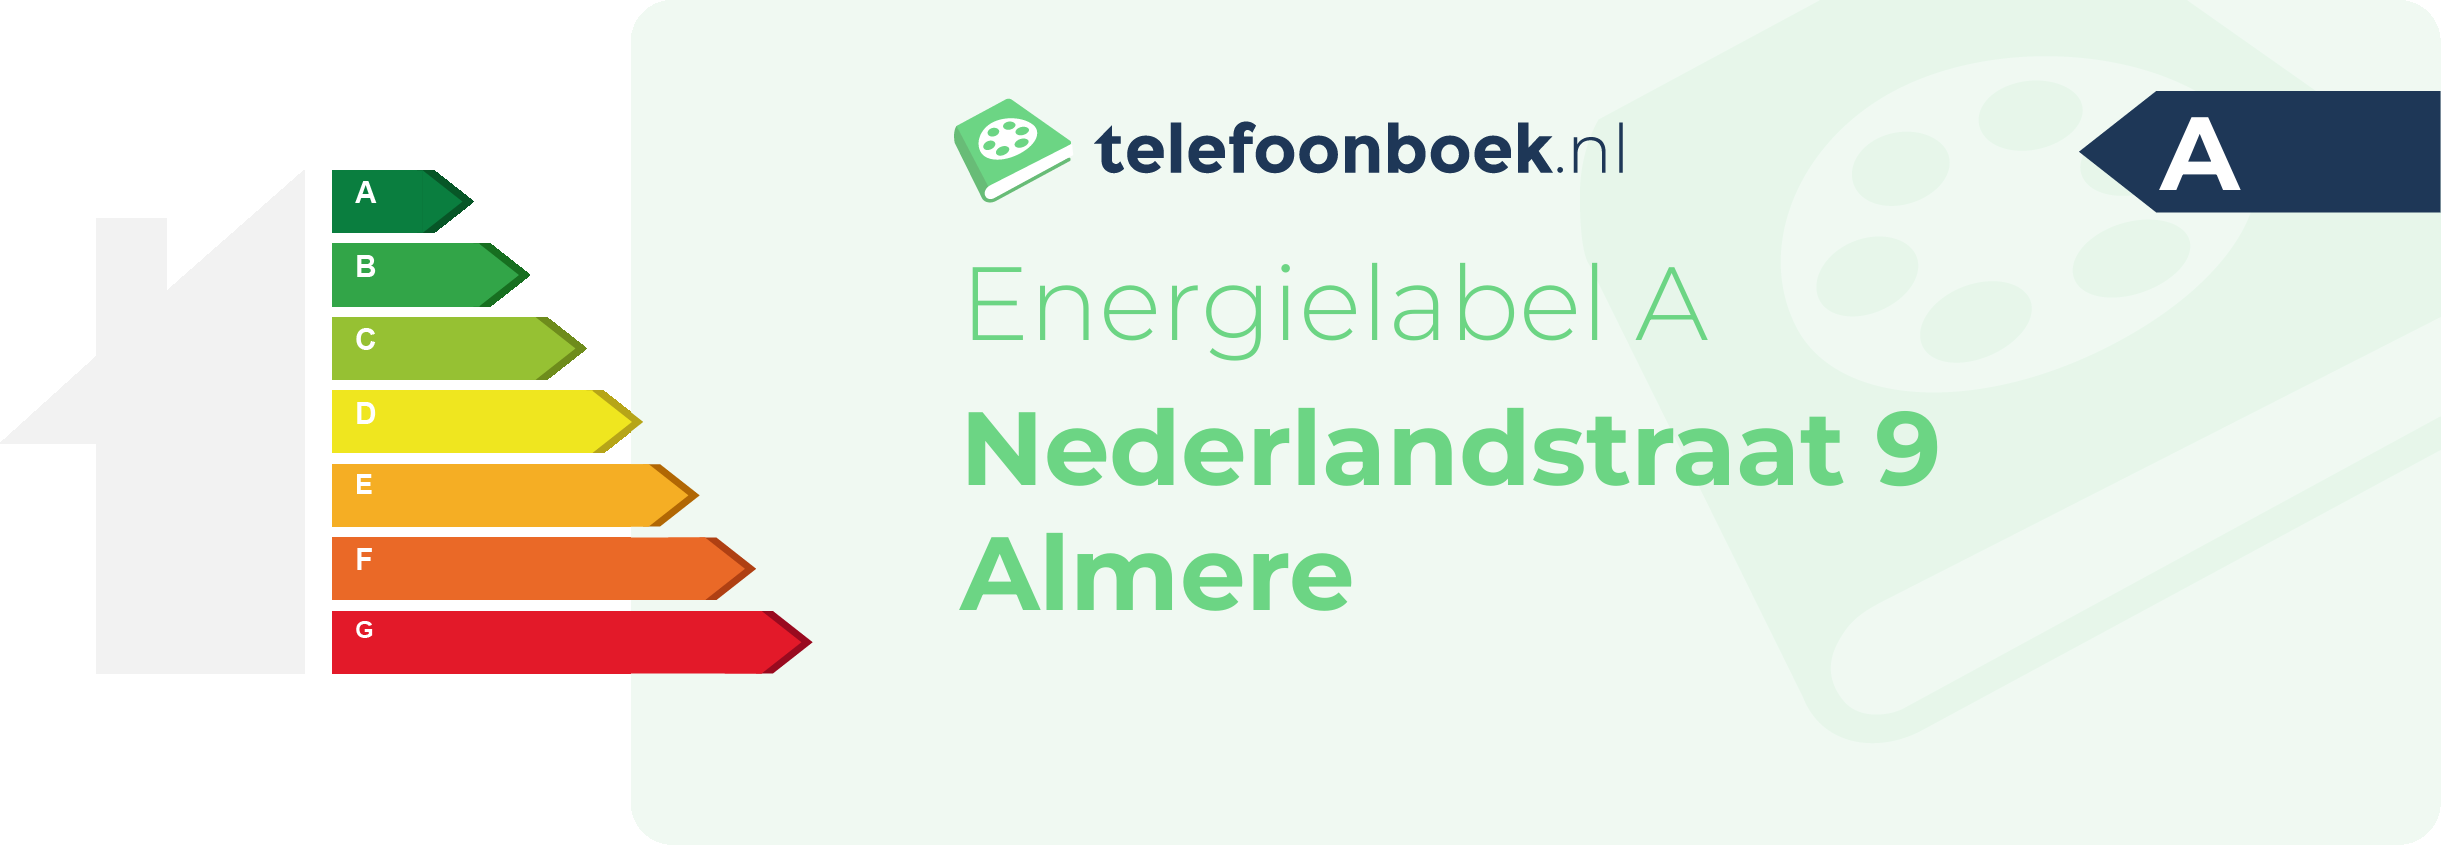 Energielabel Nederlandstraat 9 Almere